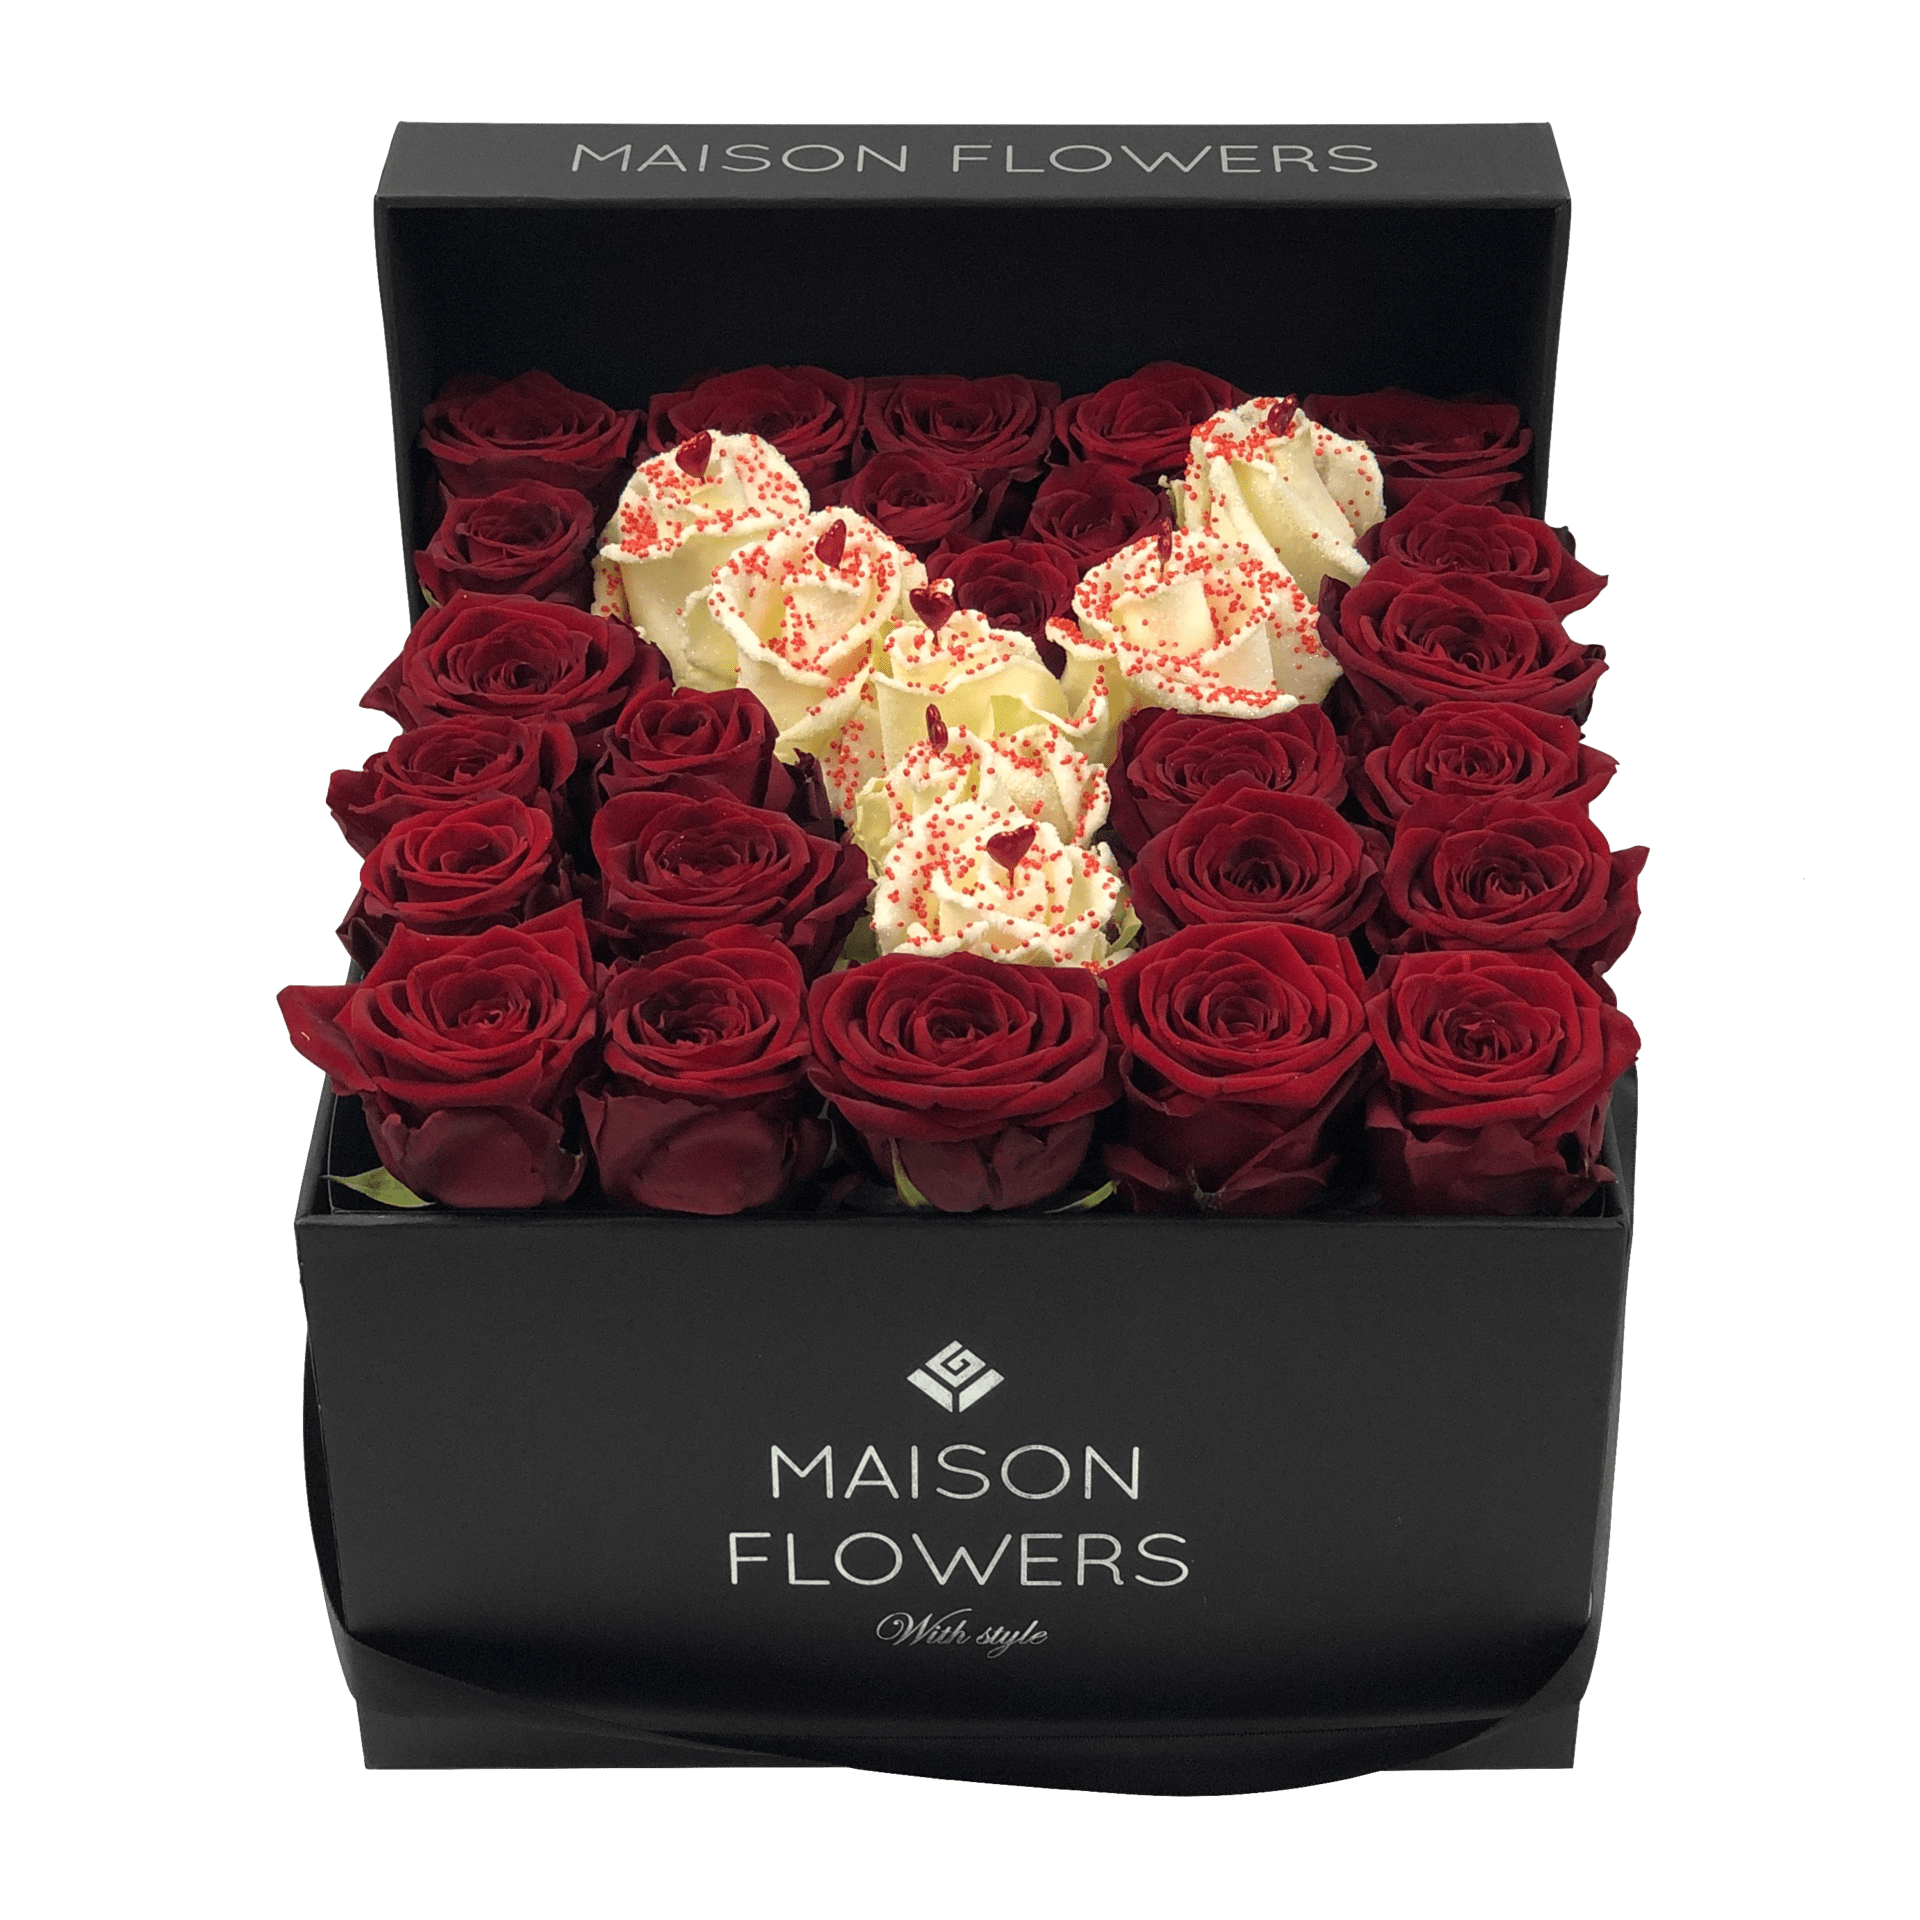 draaipunt moeilijk tevreden te krijgen groot Special Letter Large Square Box - Maison Flowers